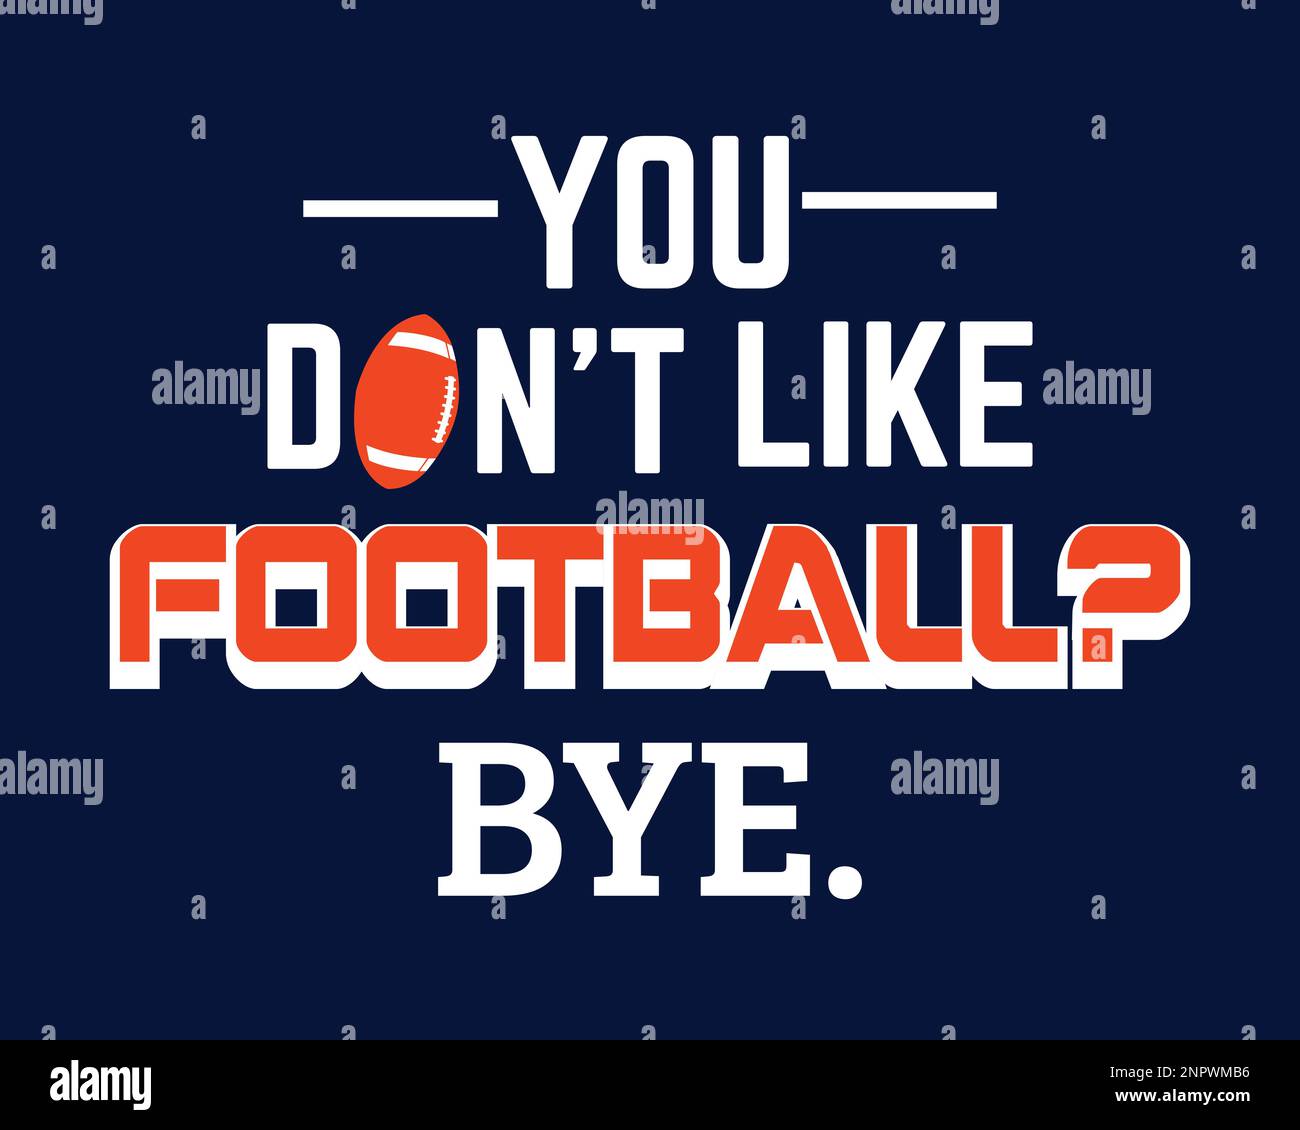 Du magst Football nicht, Bye. Design für Fußballfans Stock Vektor